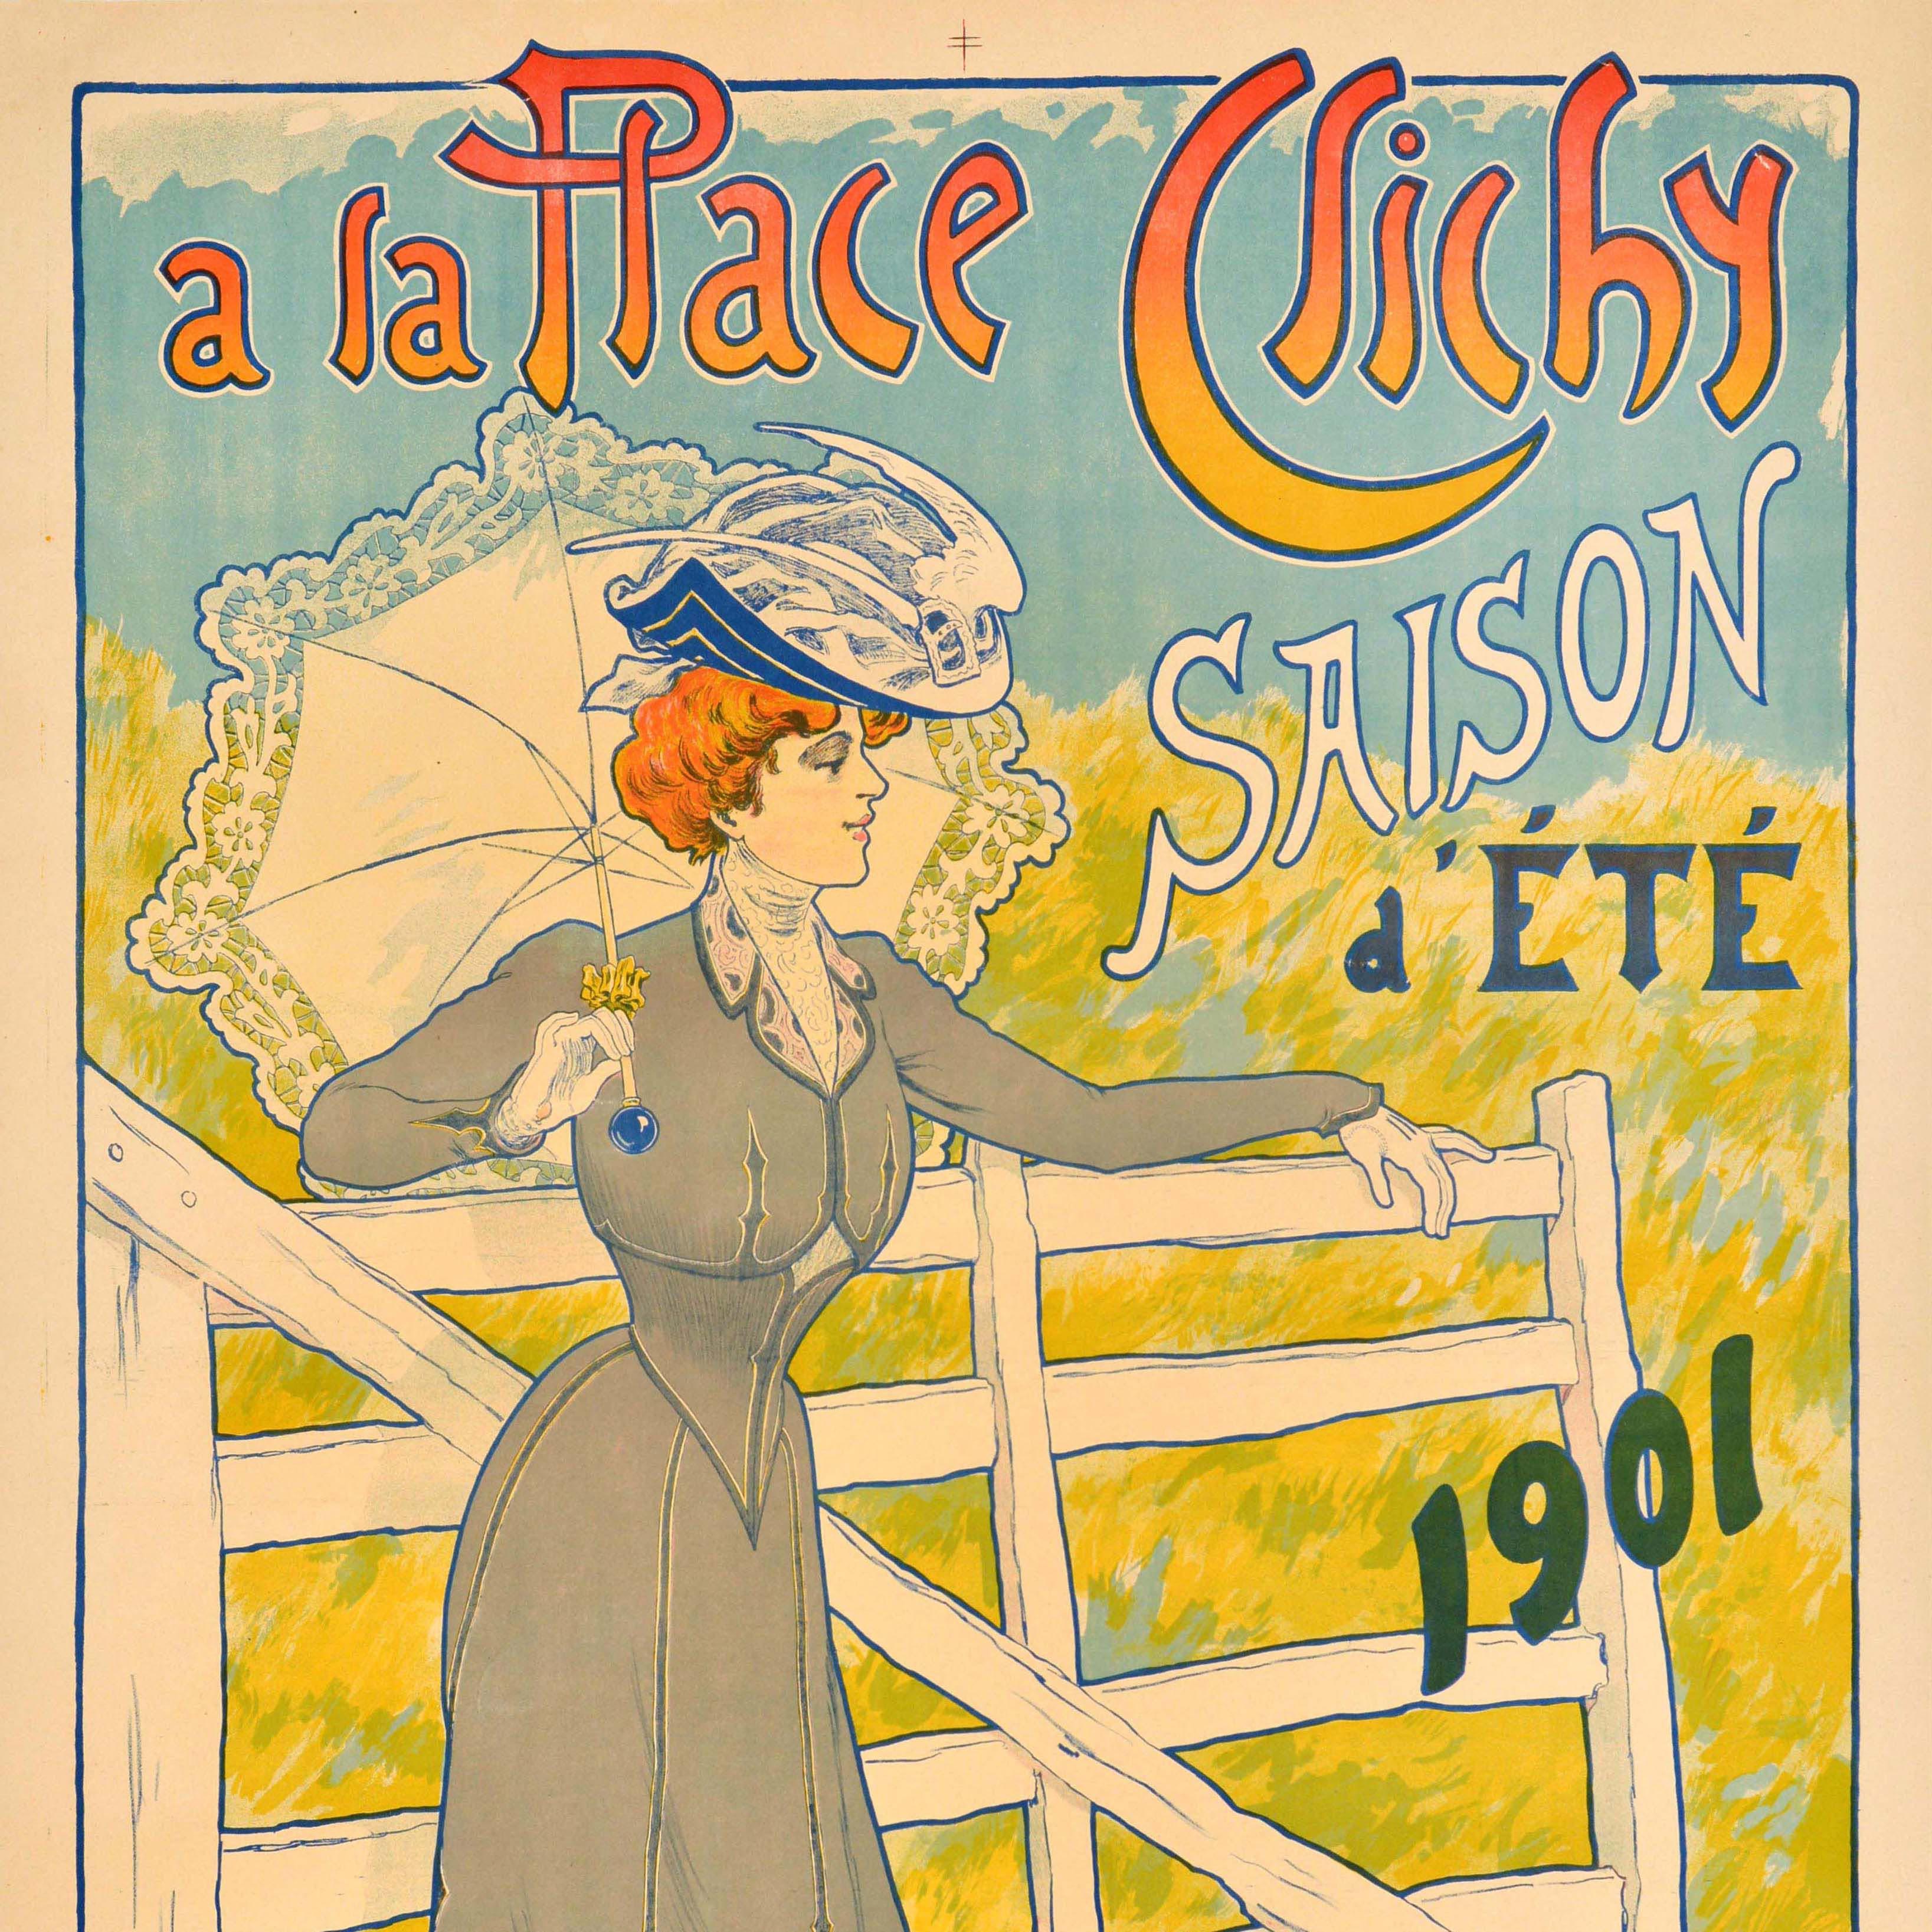 Original Antique Advertising Poster A La Place Clichy Sumer Season Fashion Paris - Art Nouveau Print by Unknown